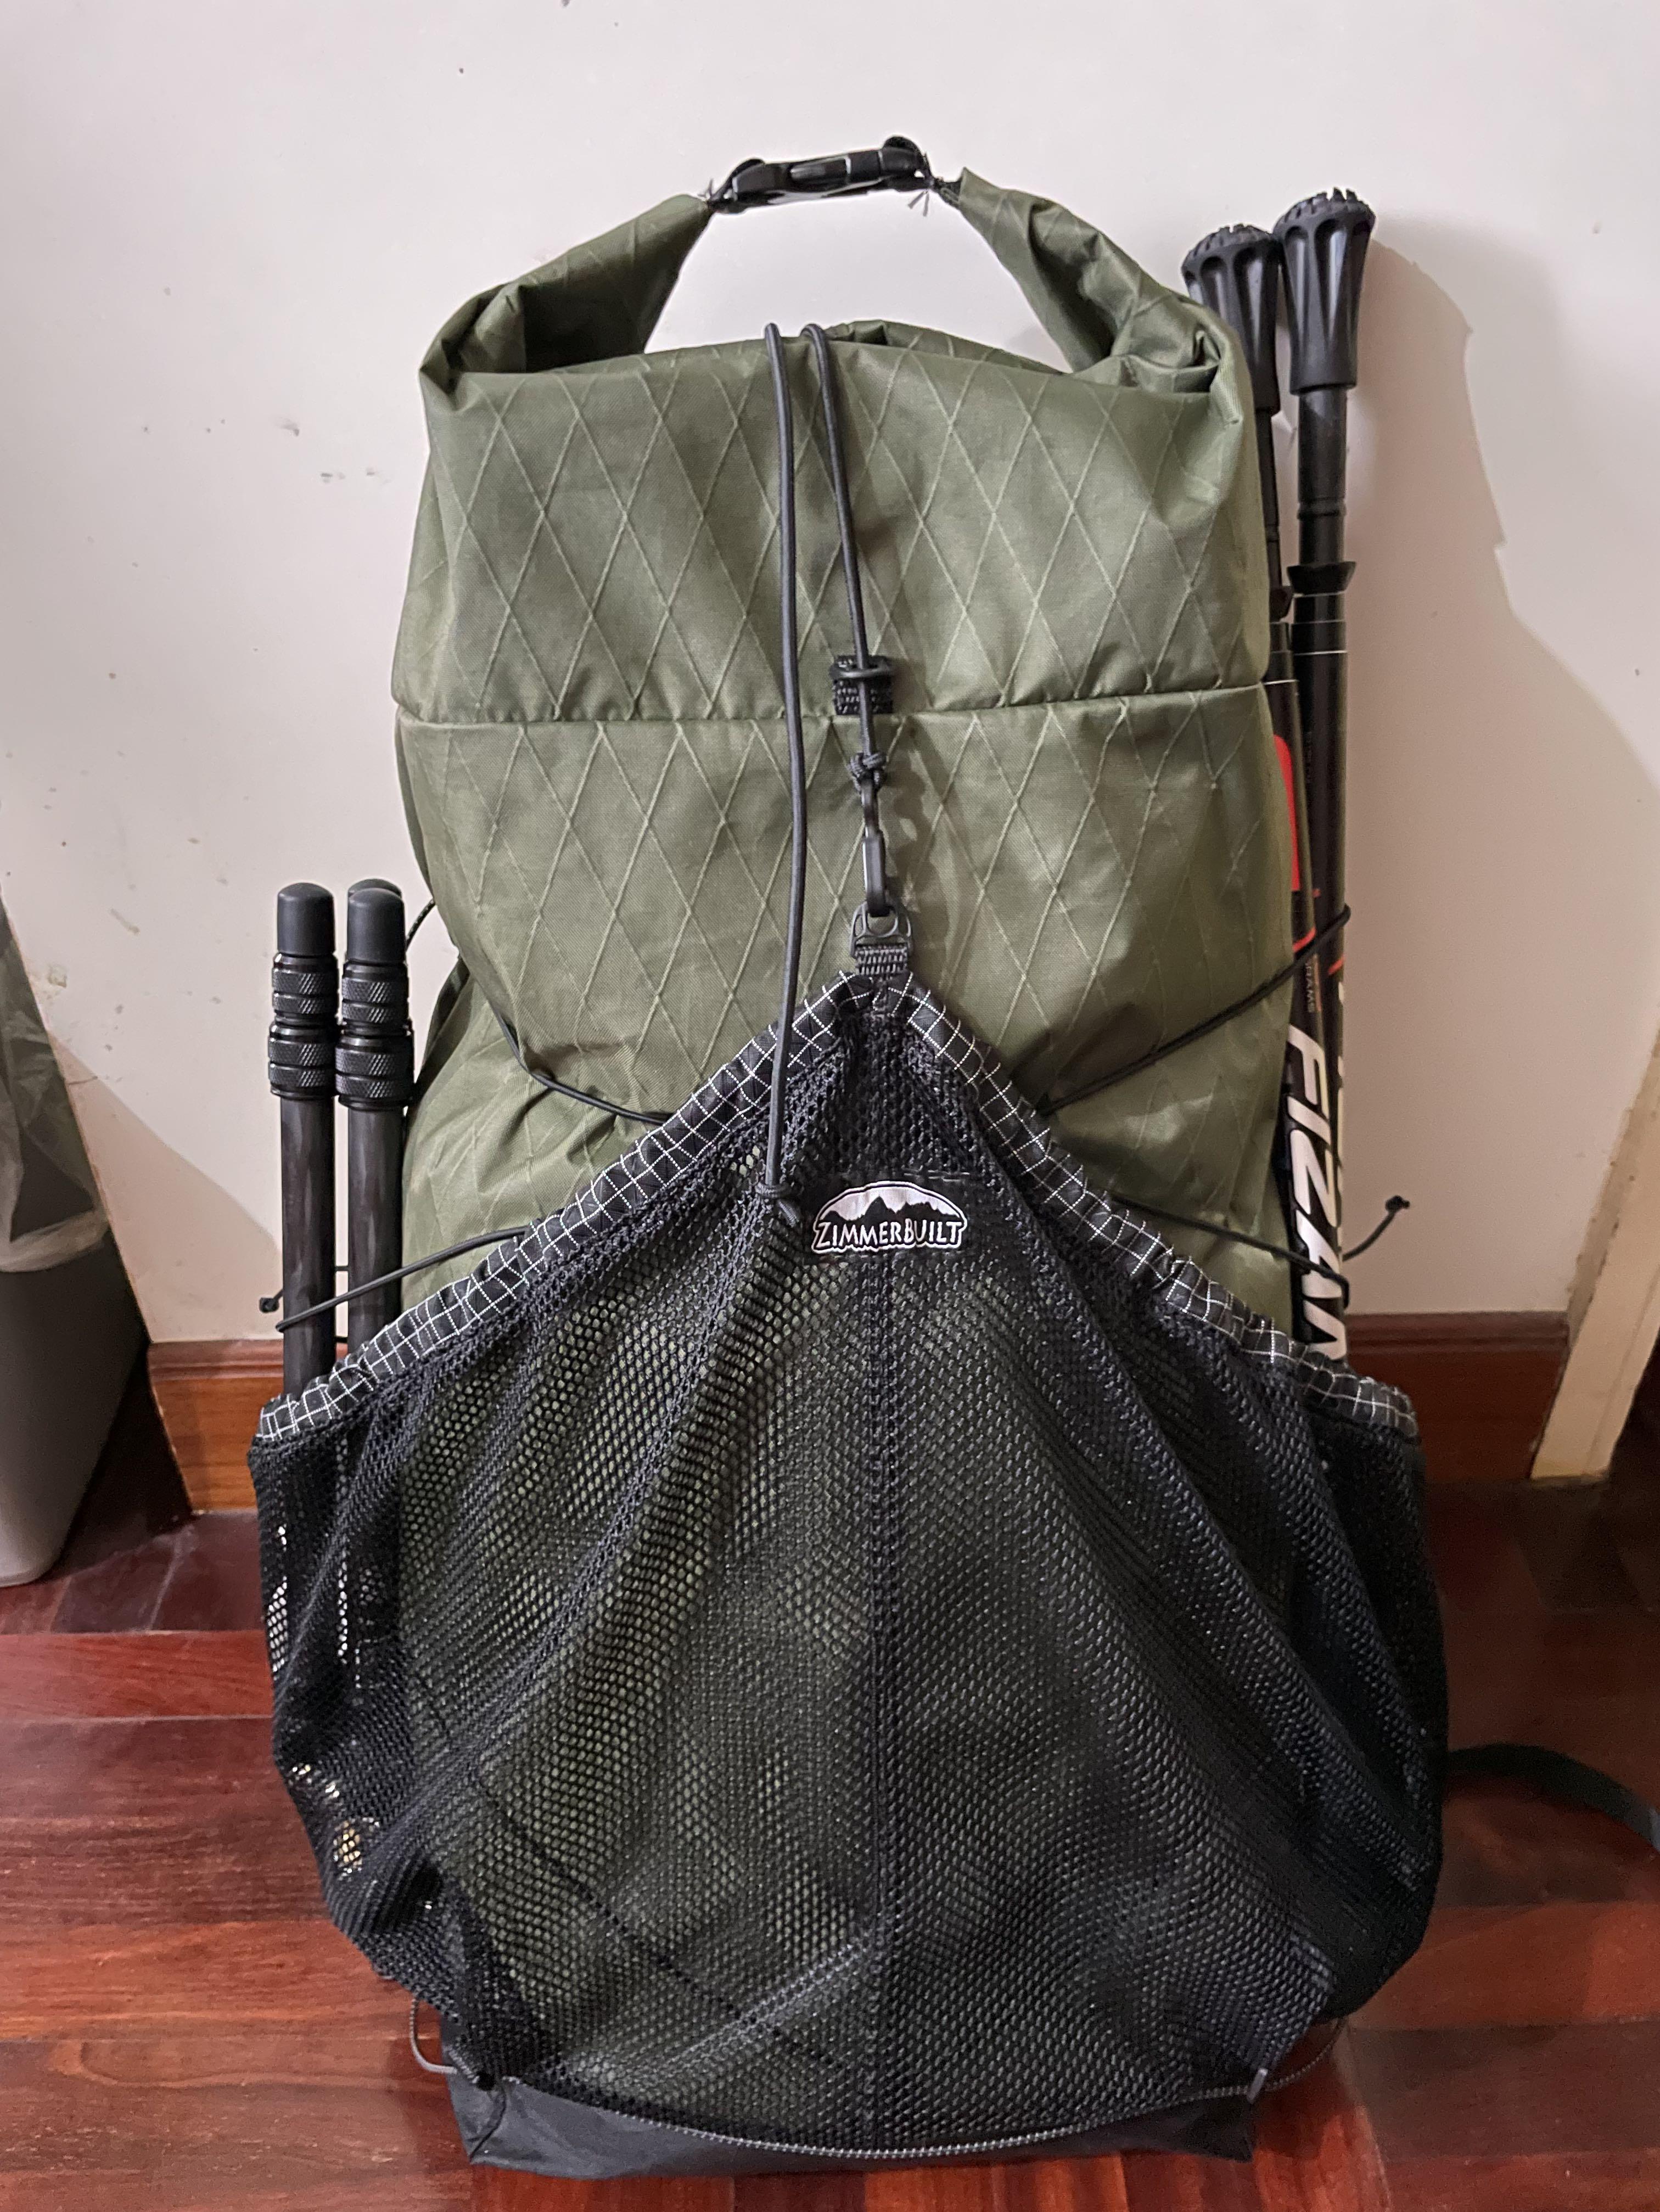 Zimmerbuilt Pika Pack X-pac 深綠色輕量背囊露營行山Ultralight